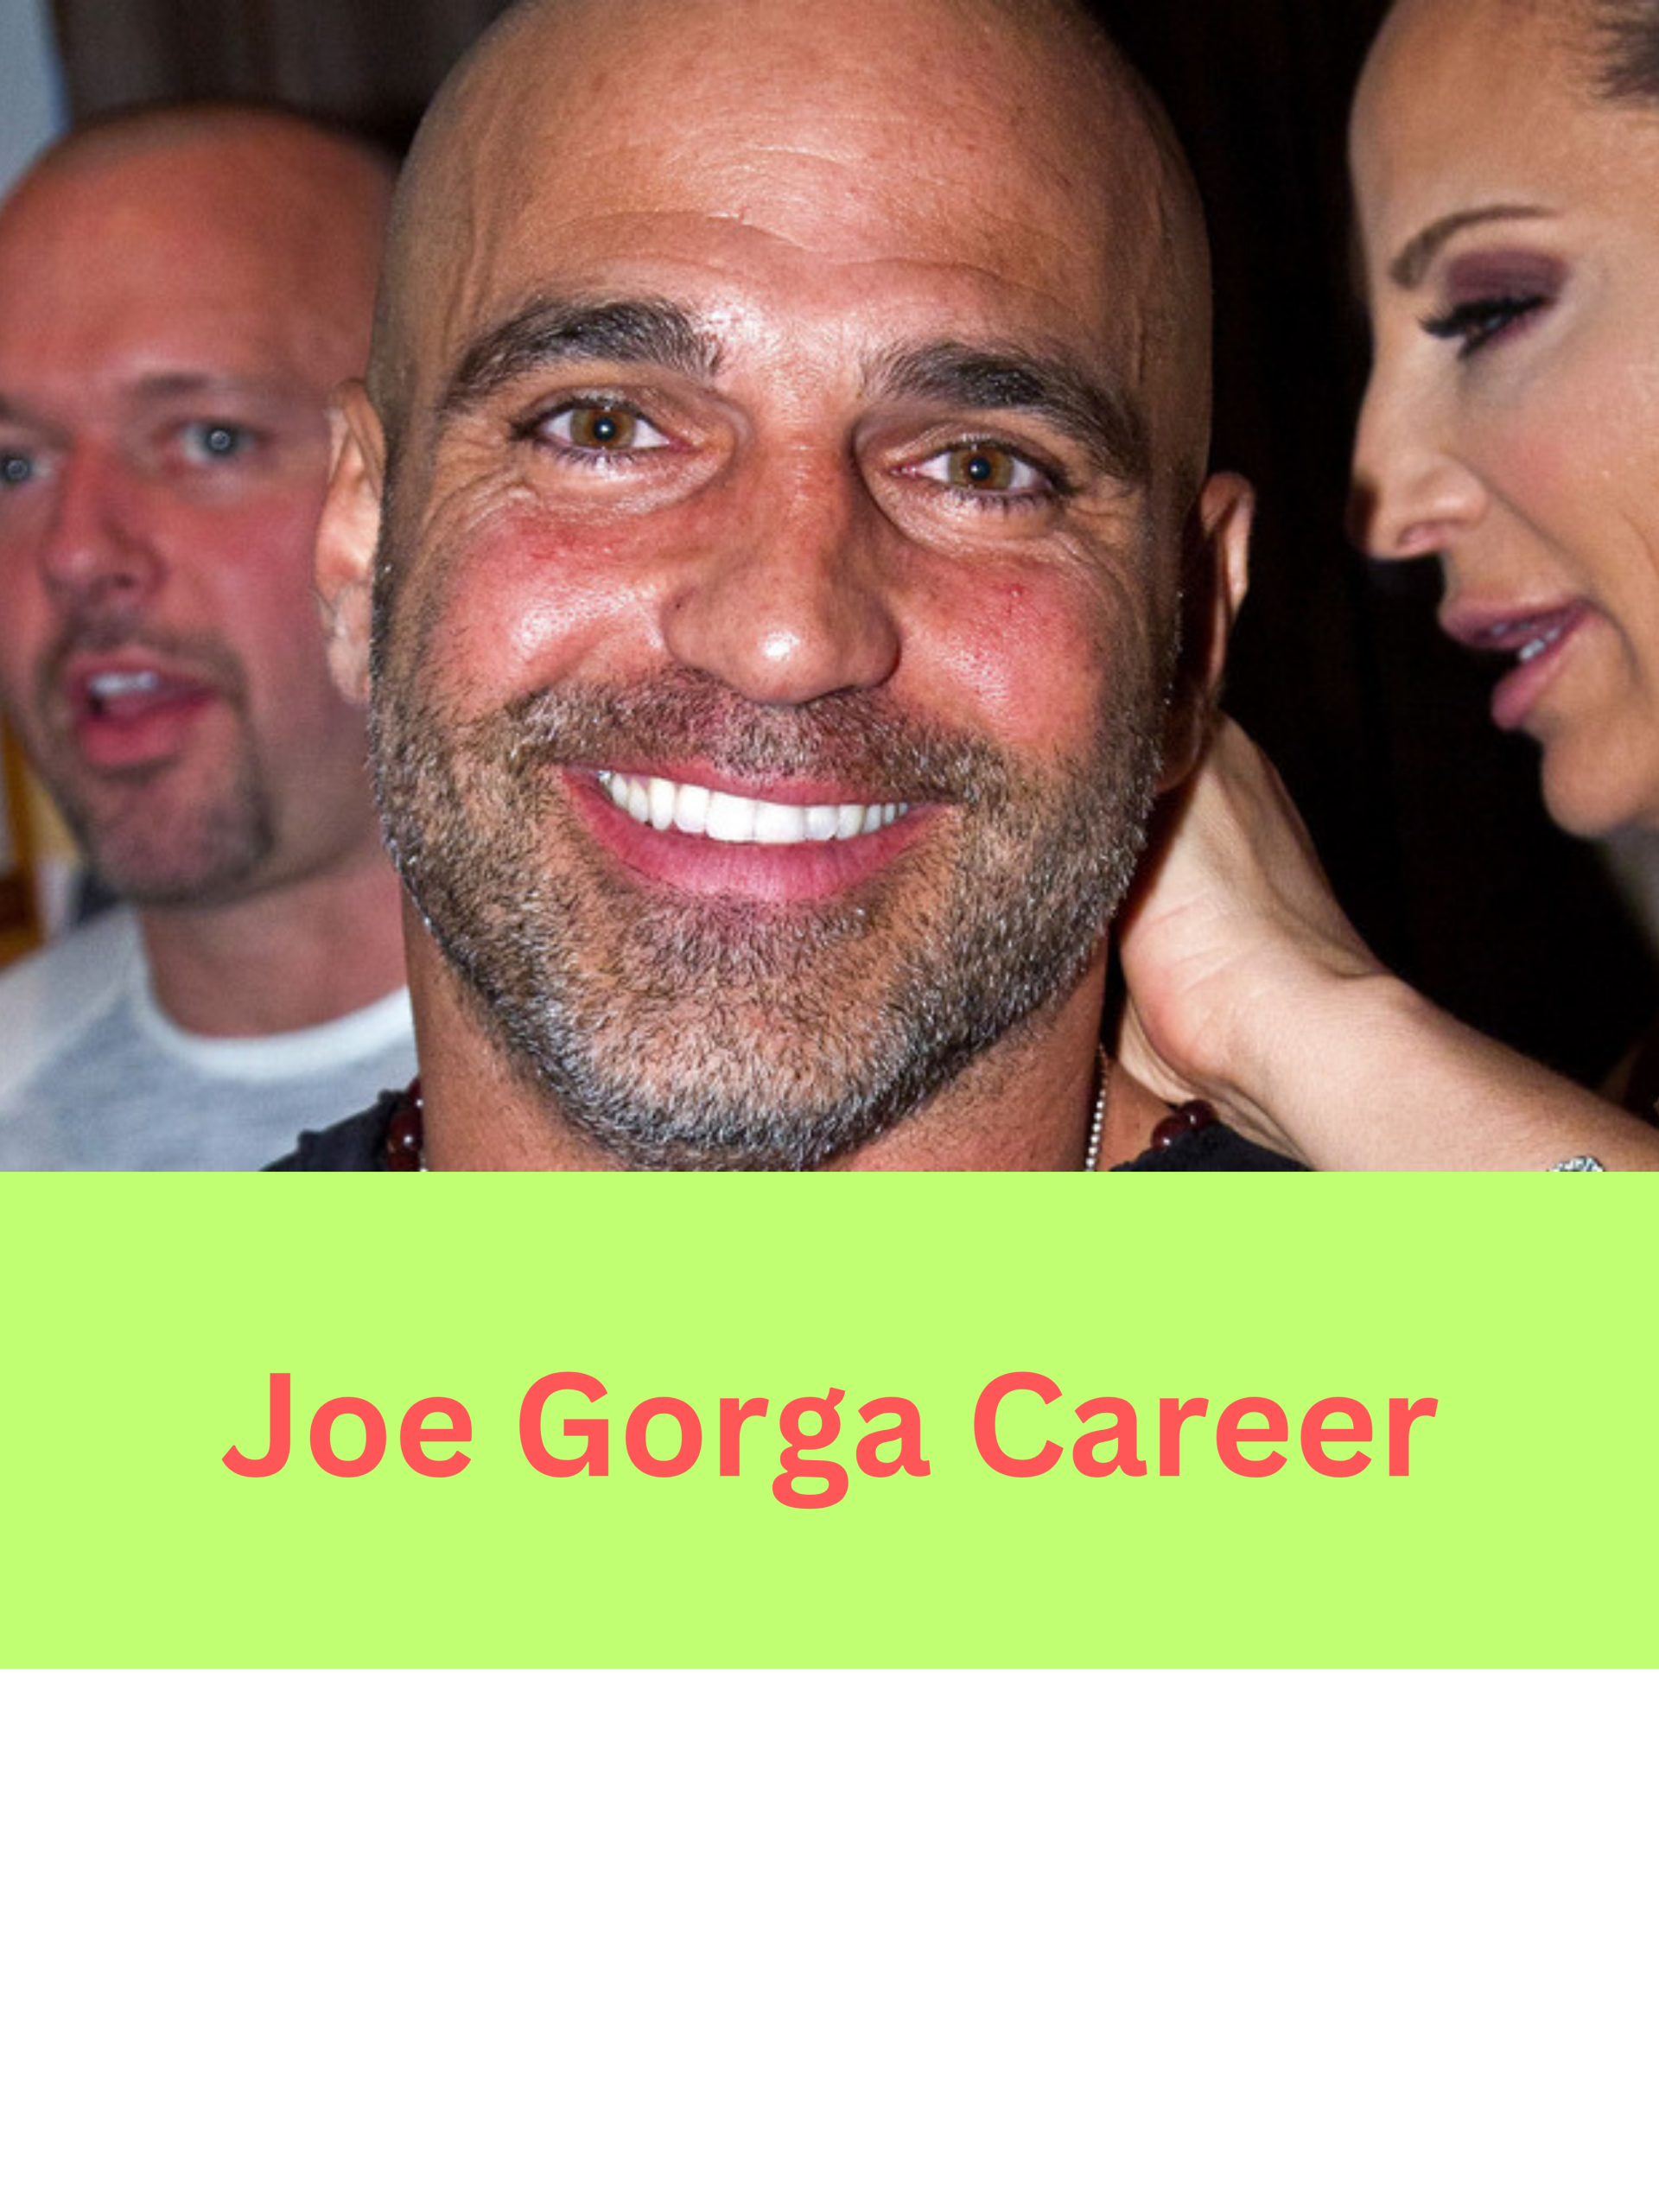 Joe Gorga Net Worth